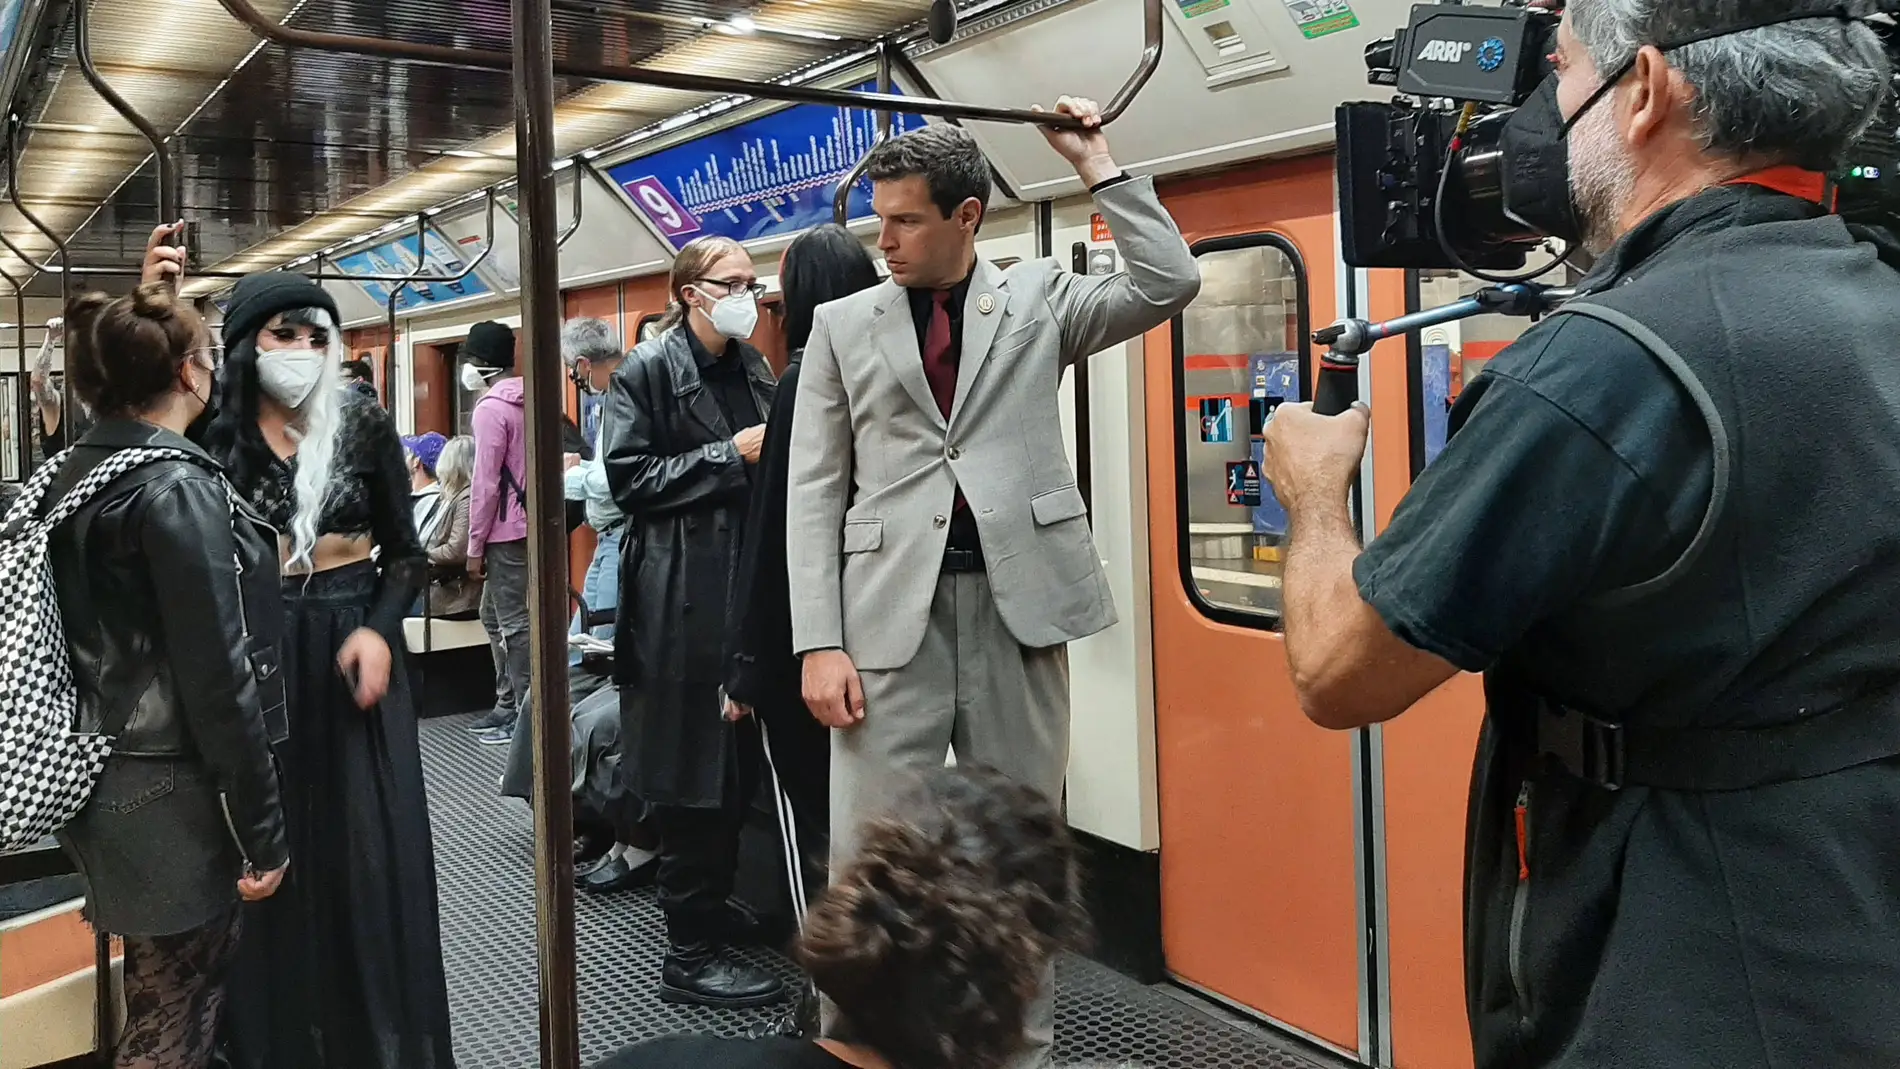 El rodaje de la serie "¡García!" (2022) uno de los 35 rodajes grabados en el Metro de Madrid el año pasado, un récord en la historia del suburbano madrileño.